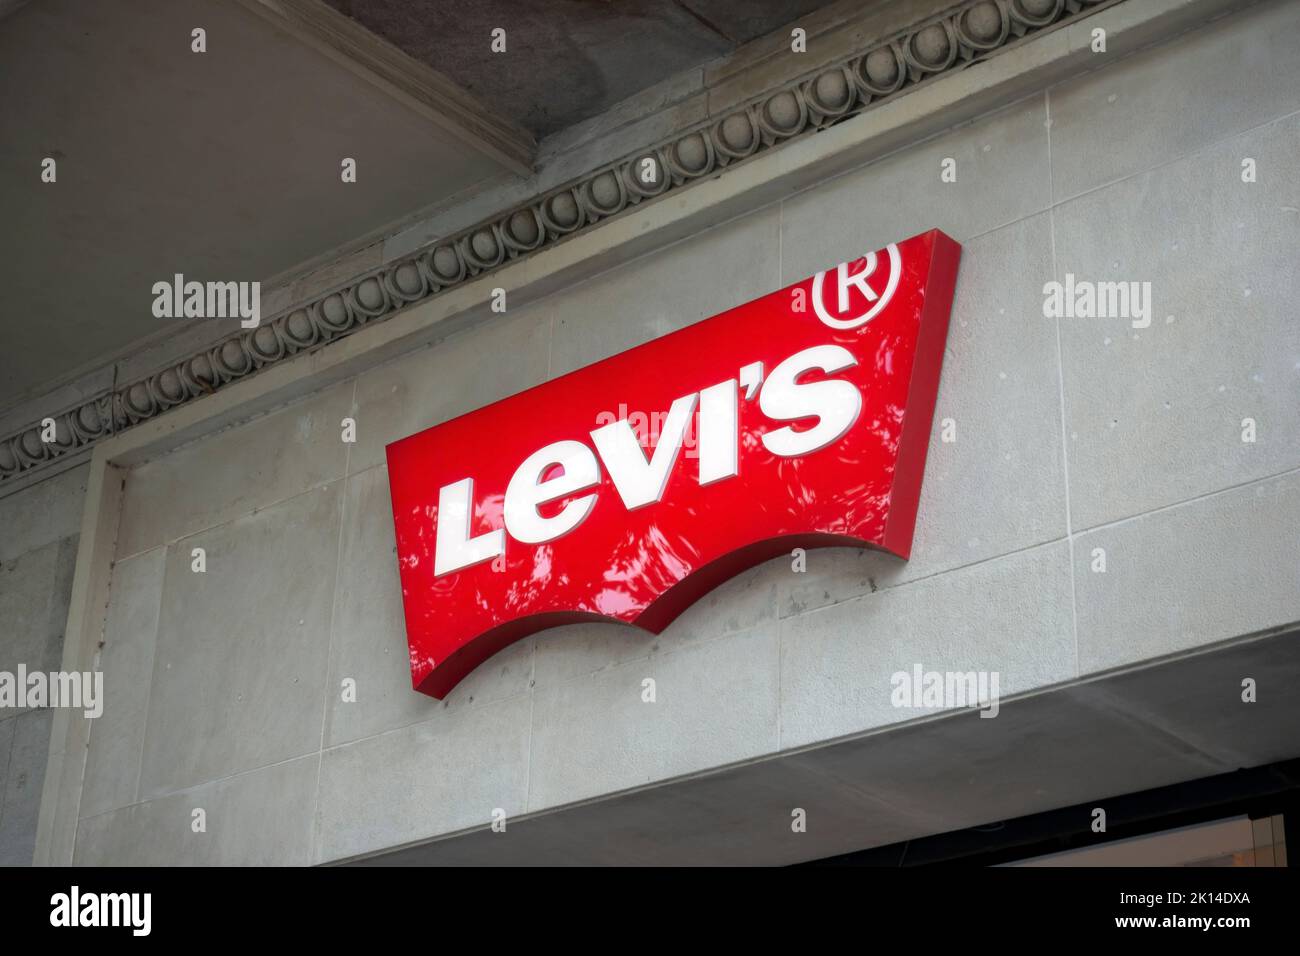 Barcelona, Spanien - 9. Mai 2022. Levi Strauss Schild an einer Wand. Levi Strauss & Co ist ein amerikanisches Bekleidungsunternehmen, das weltweit für seine Marke Levi's bekannt ist Stockfoto